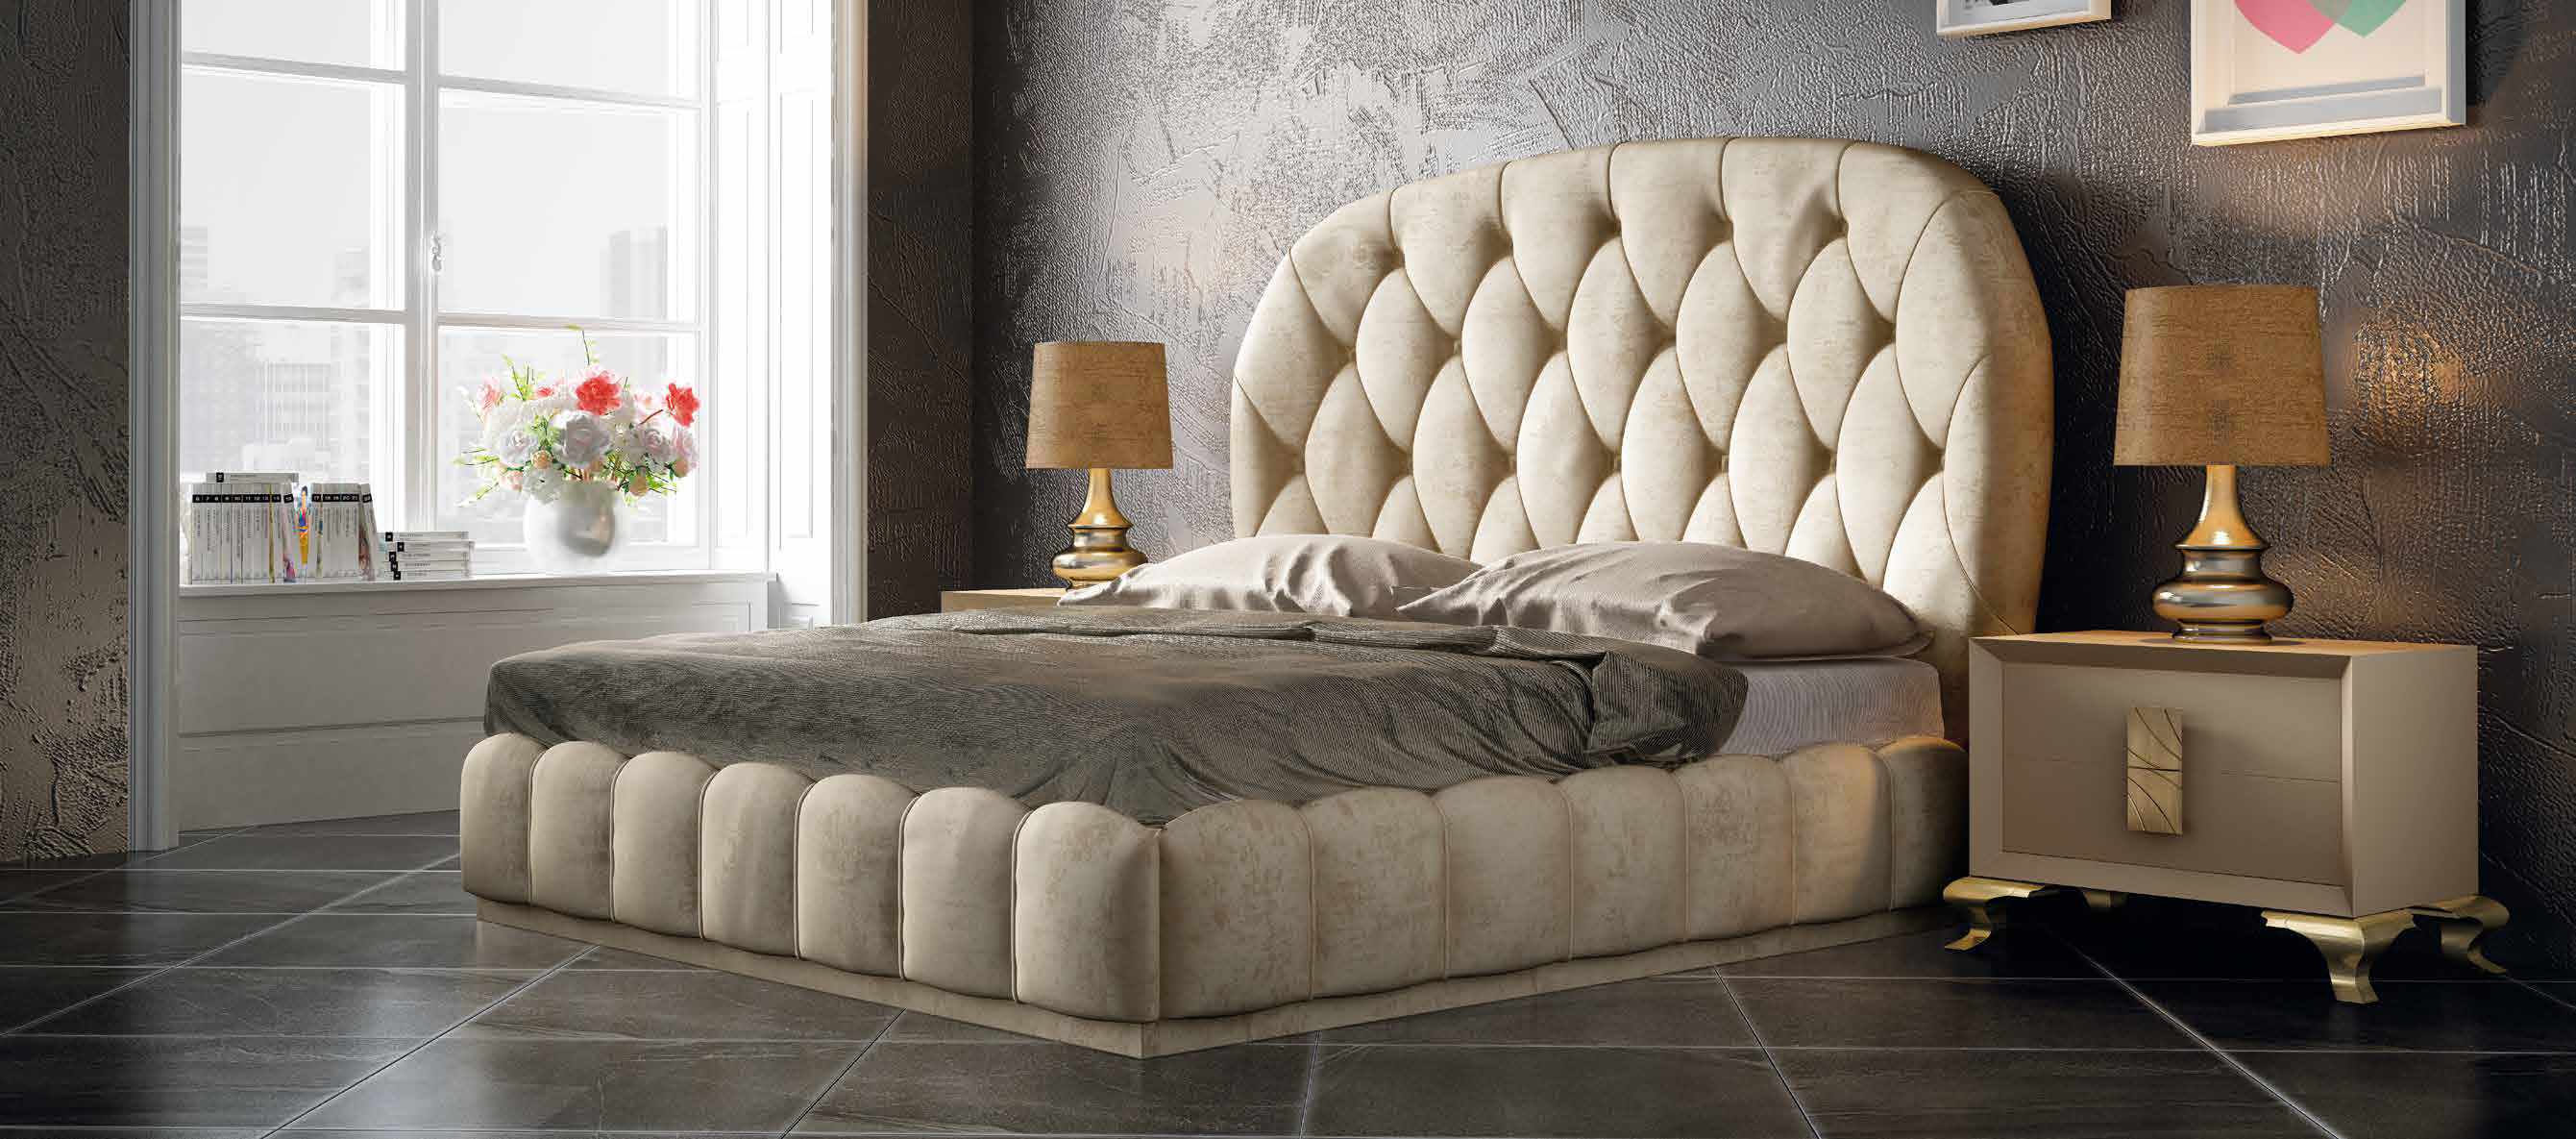 Brands Franco Furniture Avanty Bedrooms, Spain DOR 62